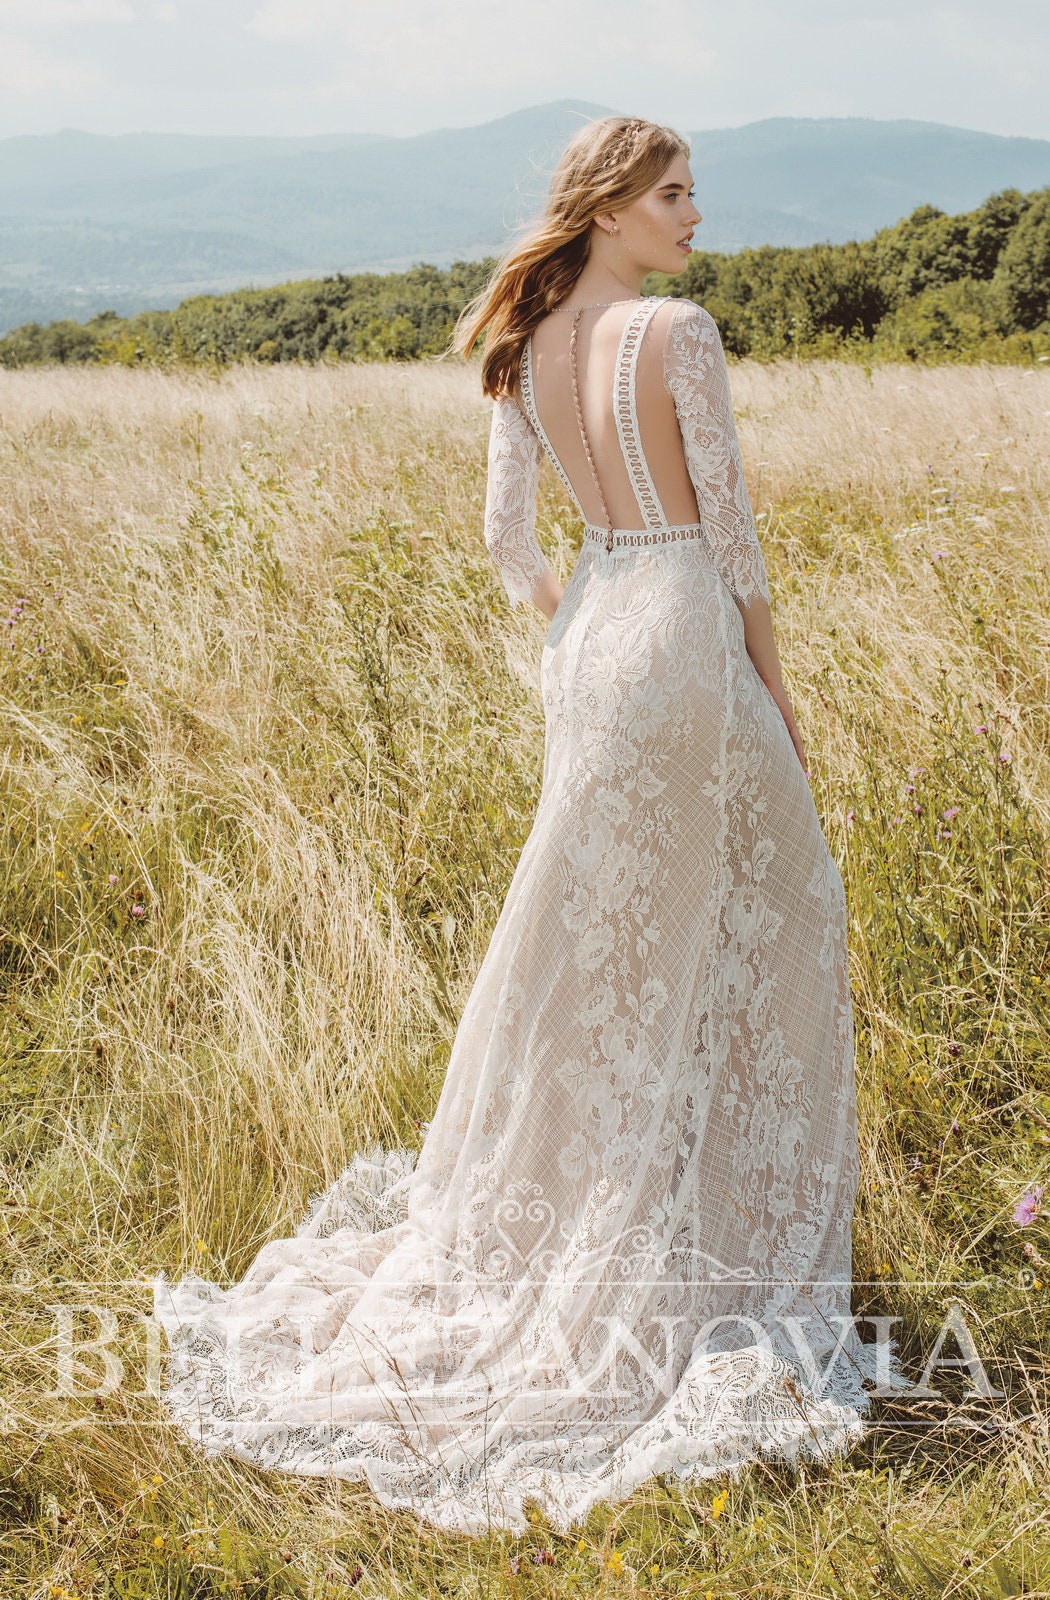 Lace sleeve wedding dress Wedding dress long sleeve Lace | Etsy